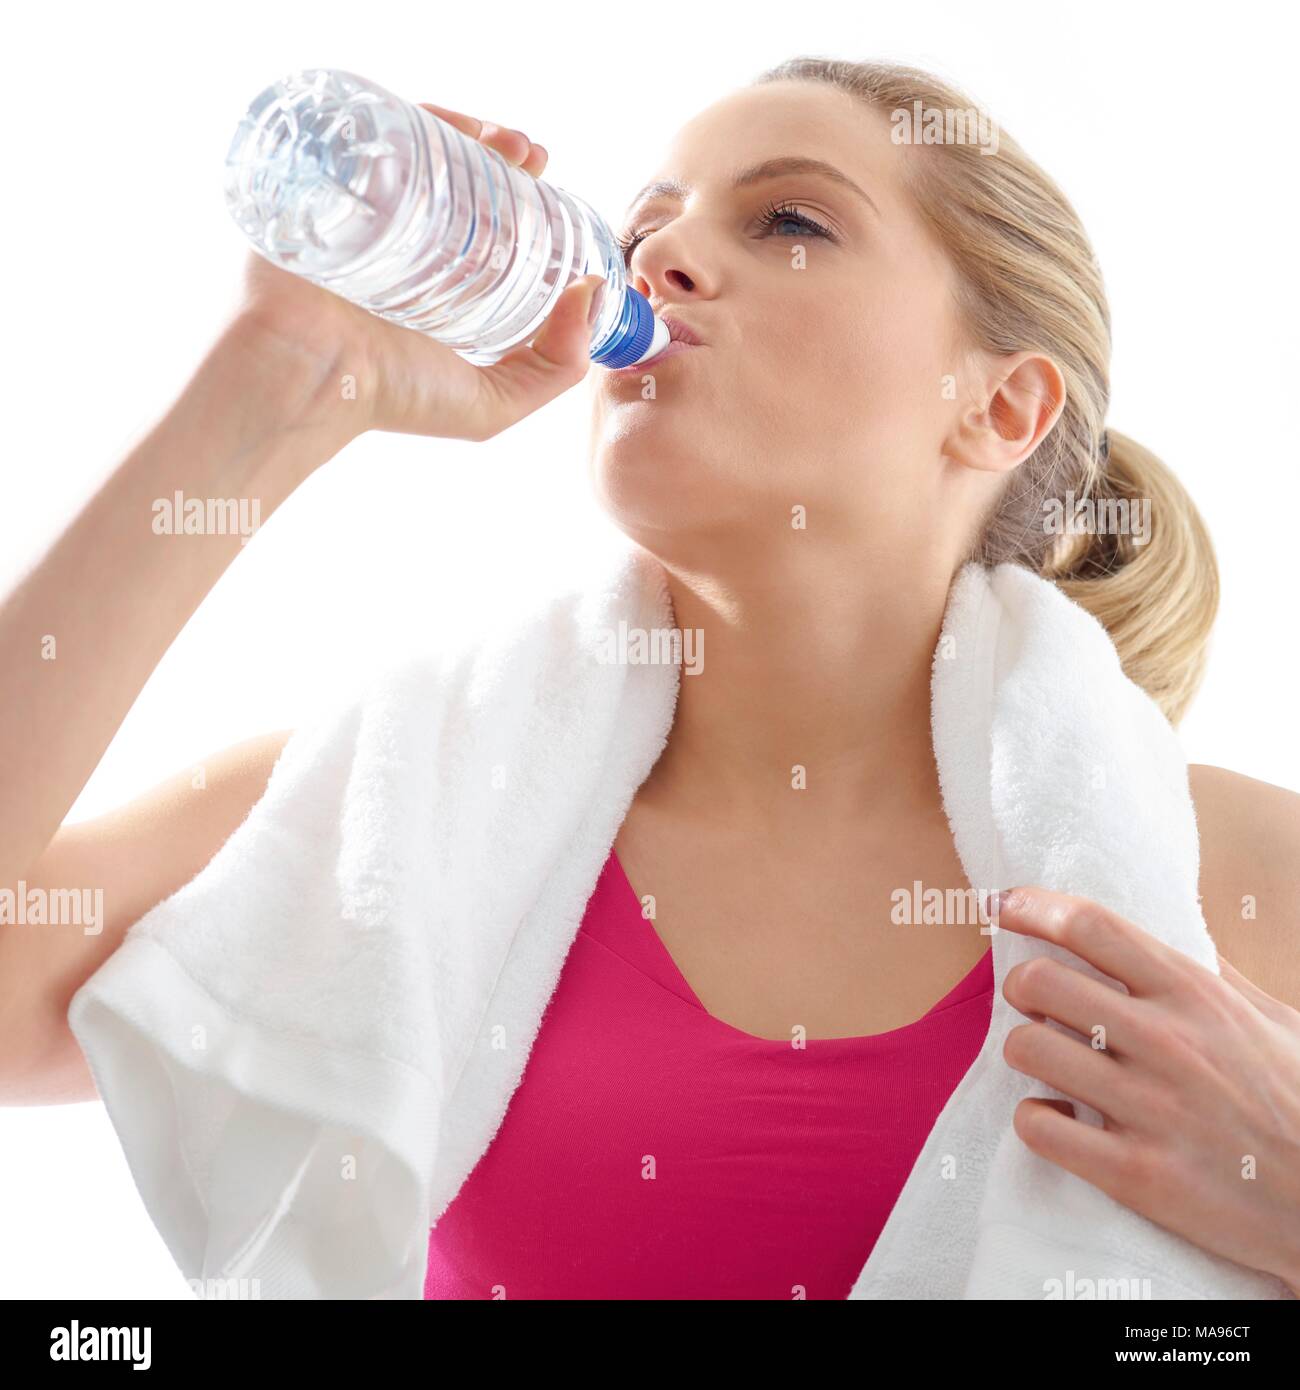 Junge Frau trinkt aus der Flasche Wasser, Studio gedreht. Stockfoto